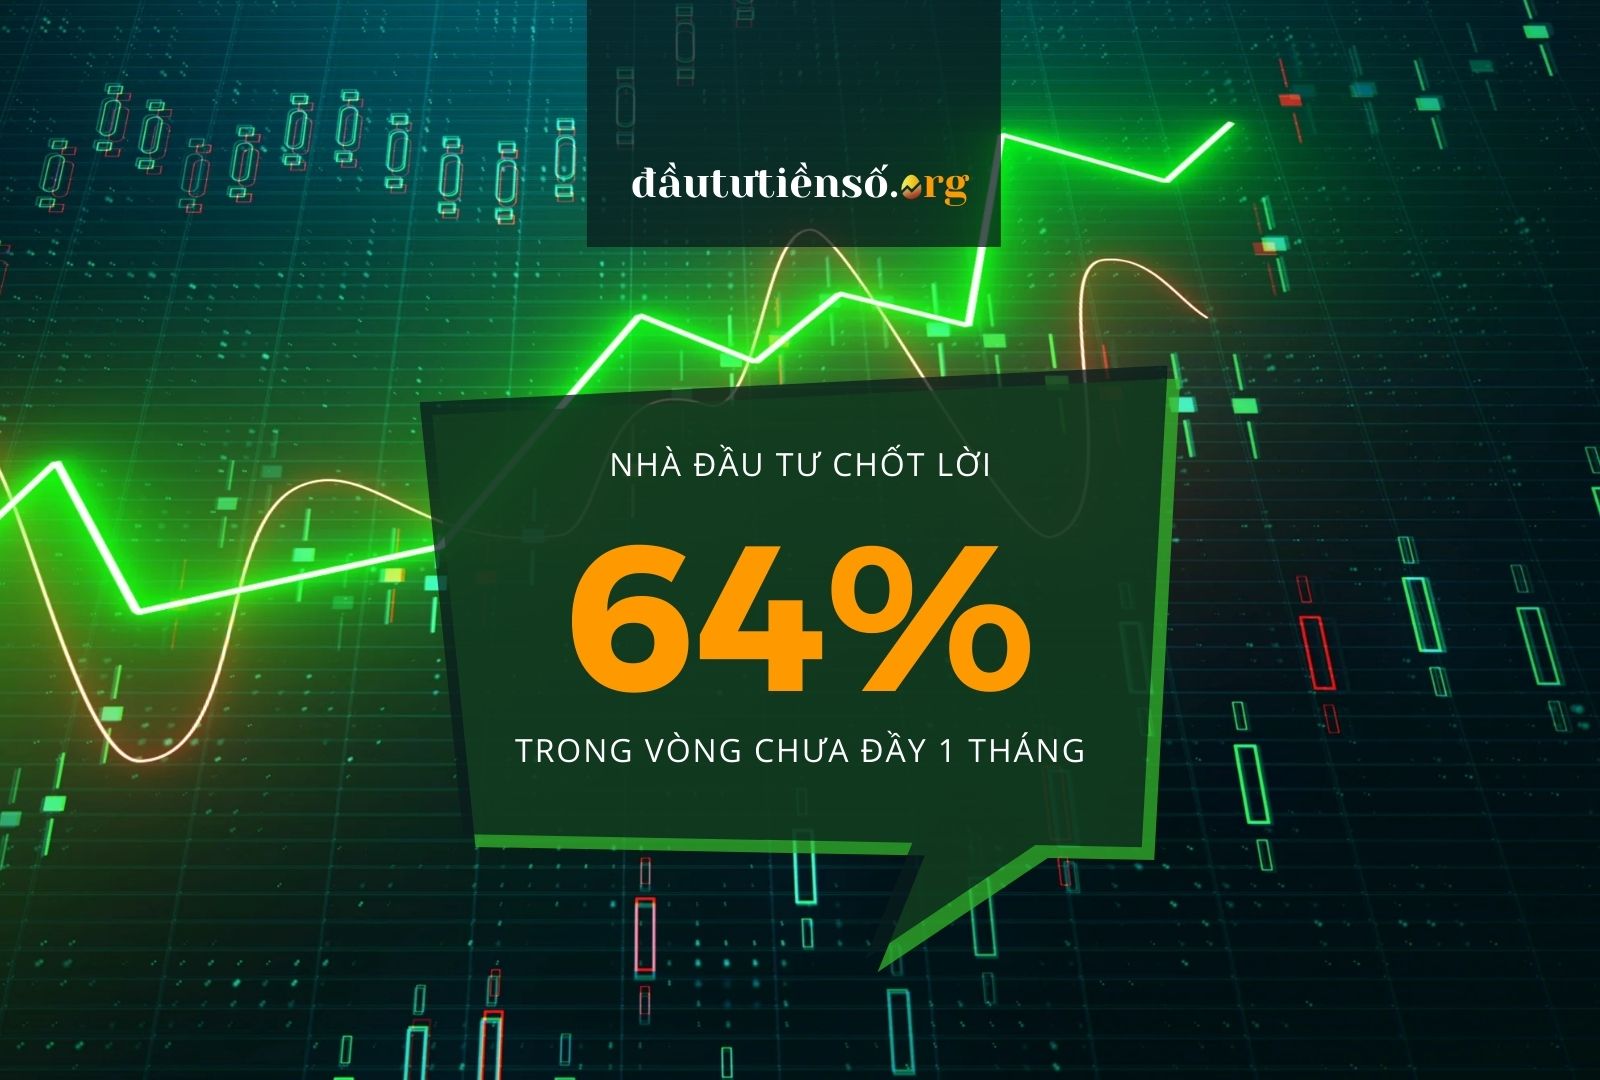 Nhà đầu tư Hên Network chốt lời hơn 64% trong vòng chưa đầy 1 tháng